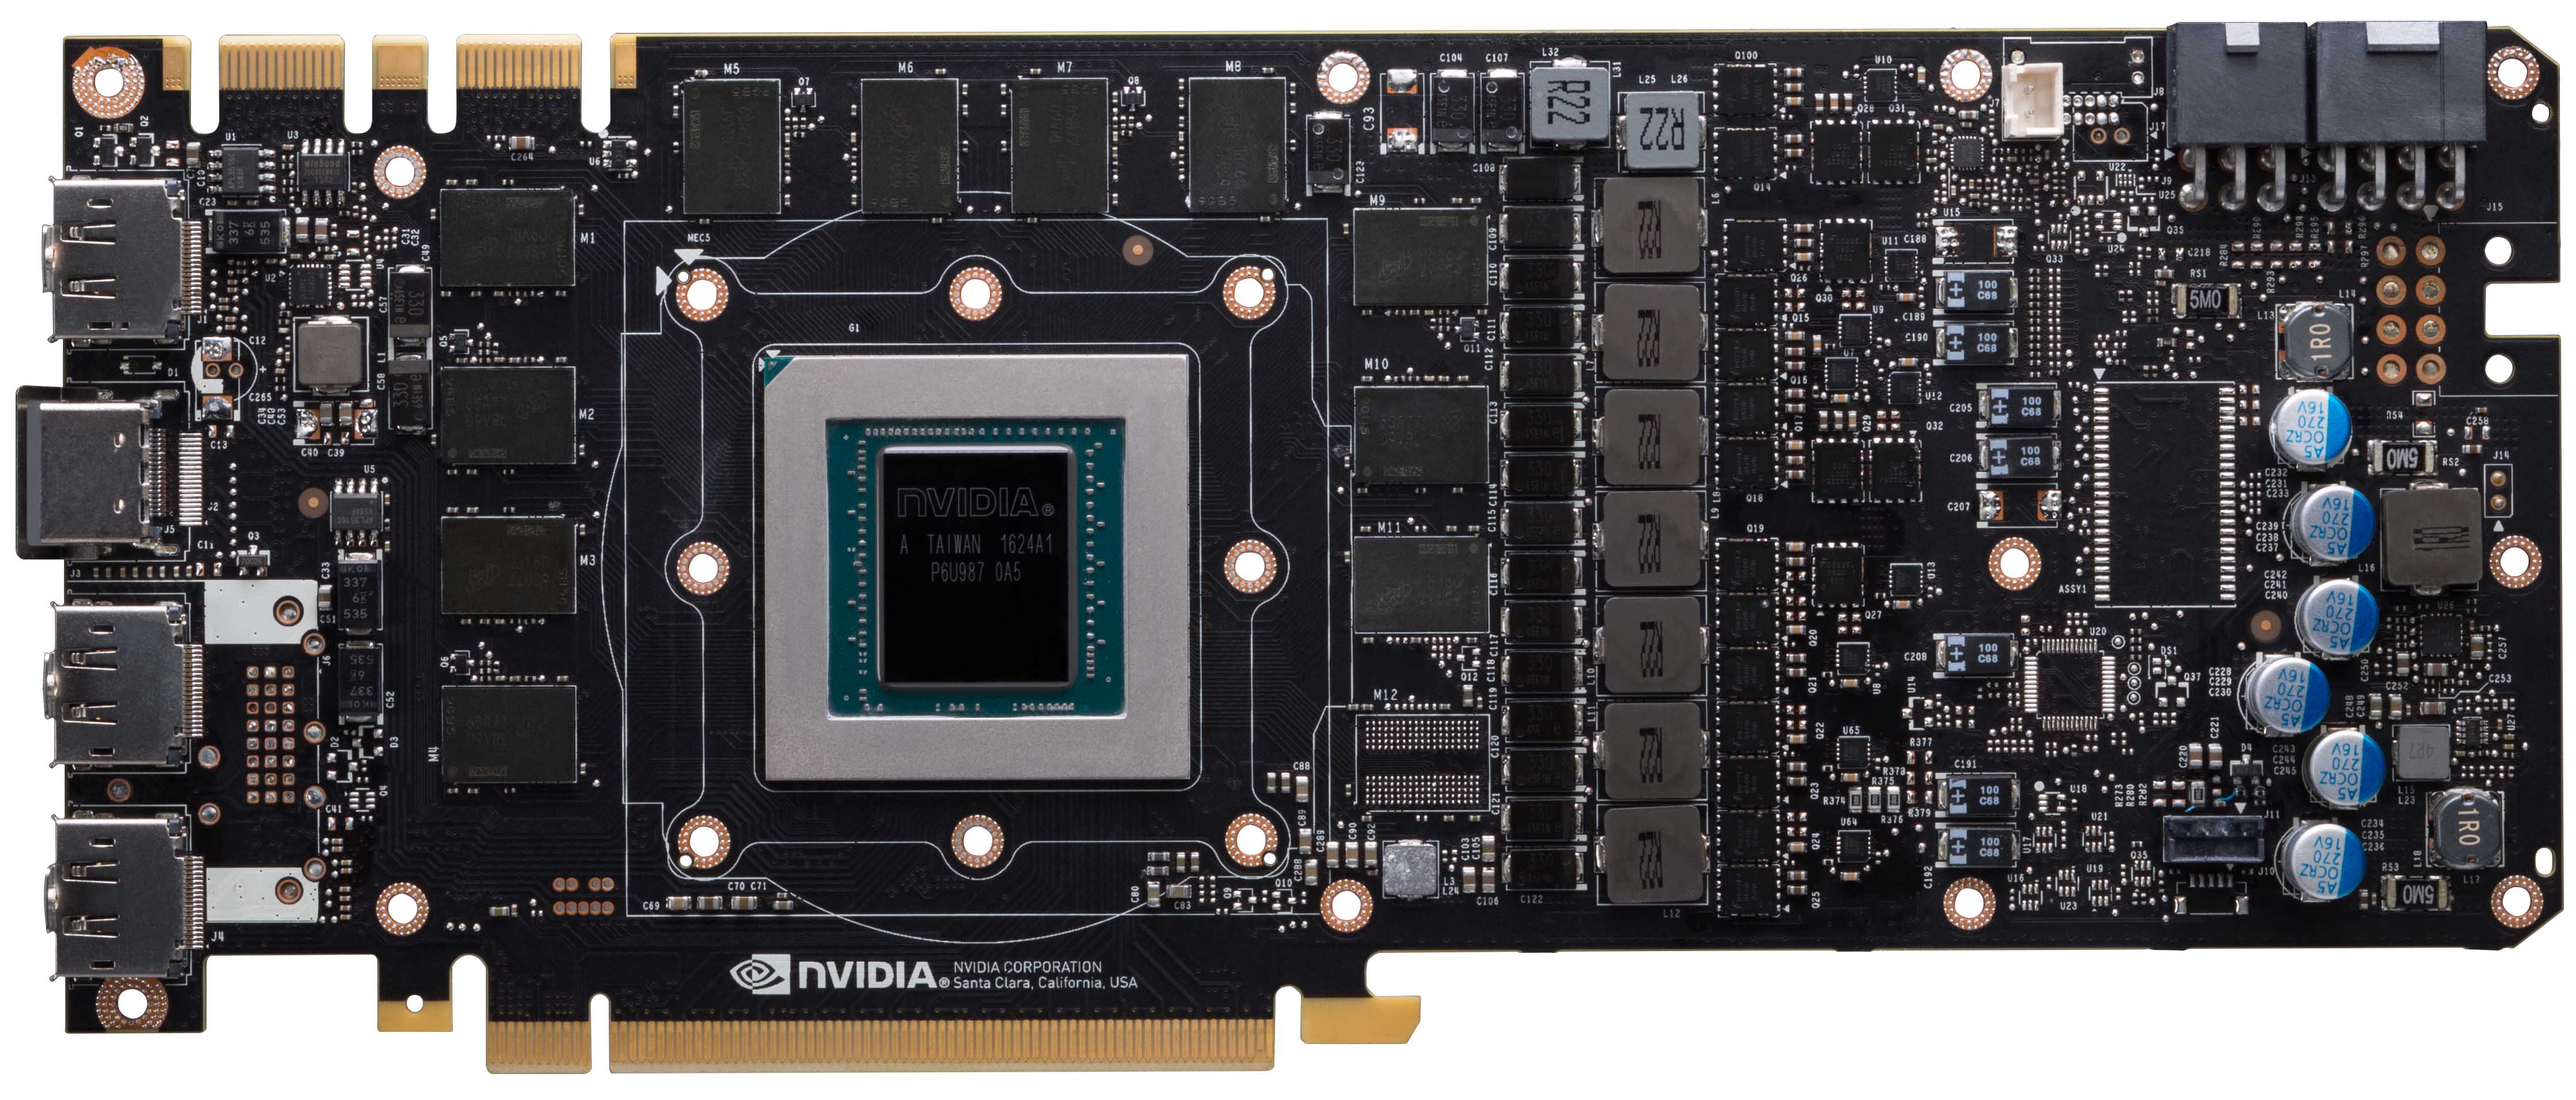 Afskrække fugtighed Omvendt The NVIDIA GeForce GTX 1080 Ti Founder's Edition Review: Bigger Pascal for  Better Performance